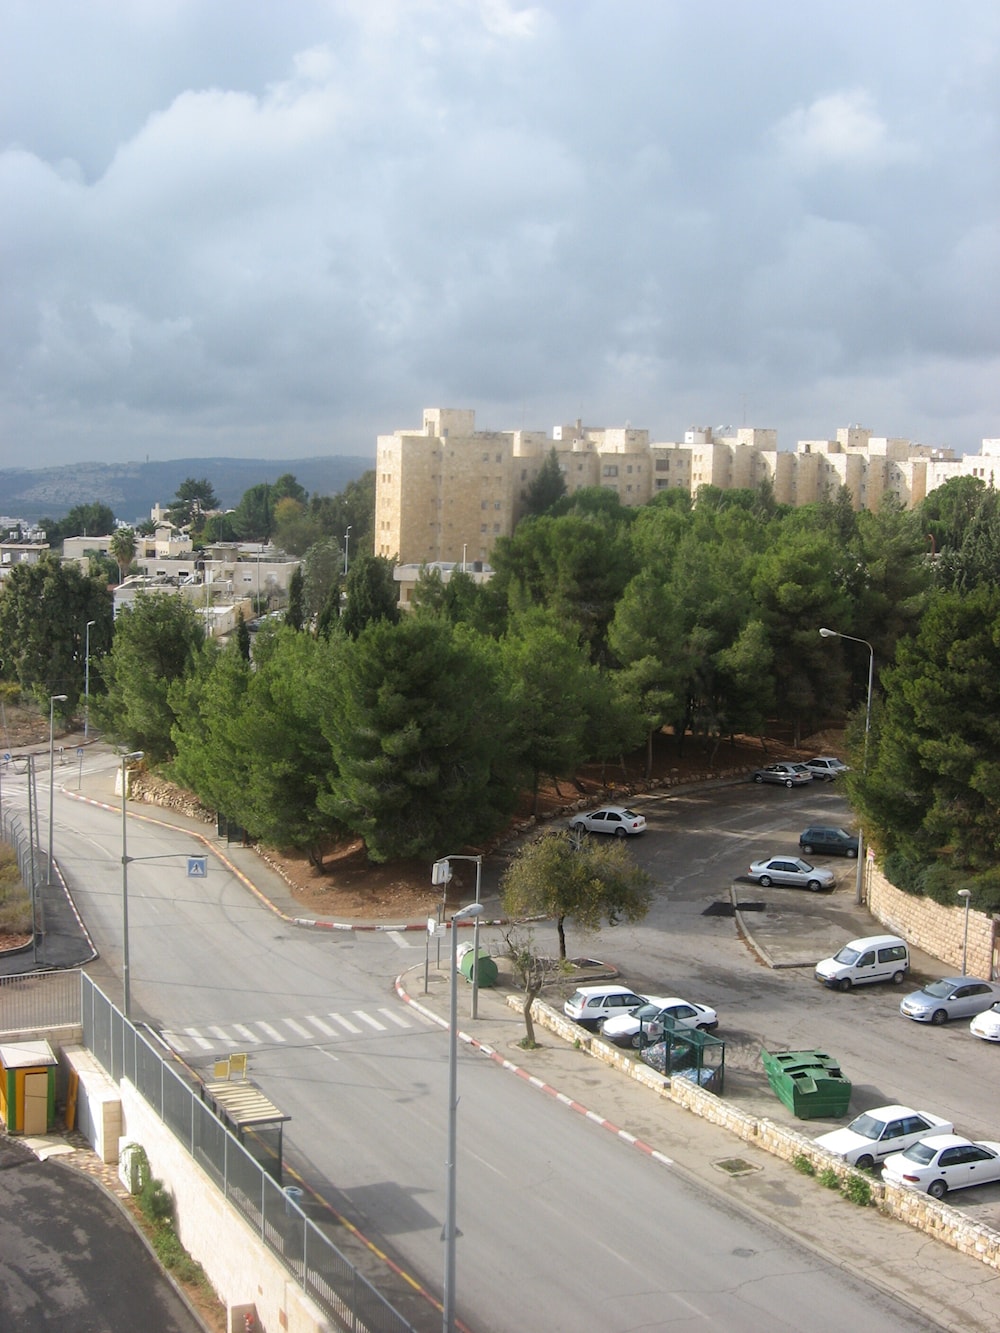 La Colina Francesa, conocida como French Hill en inglés, es un barrio ubicado en la parte noreste de la ciudad de Jerusalén, creado en 1969 en territorio ocupado durante la Guerra de los Seis Días en 1967.